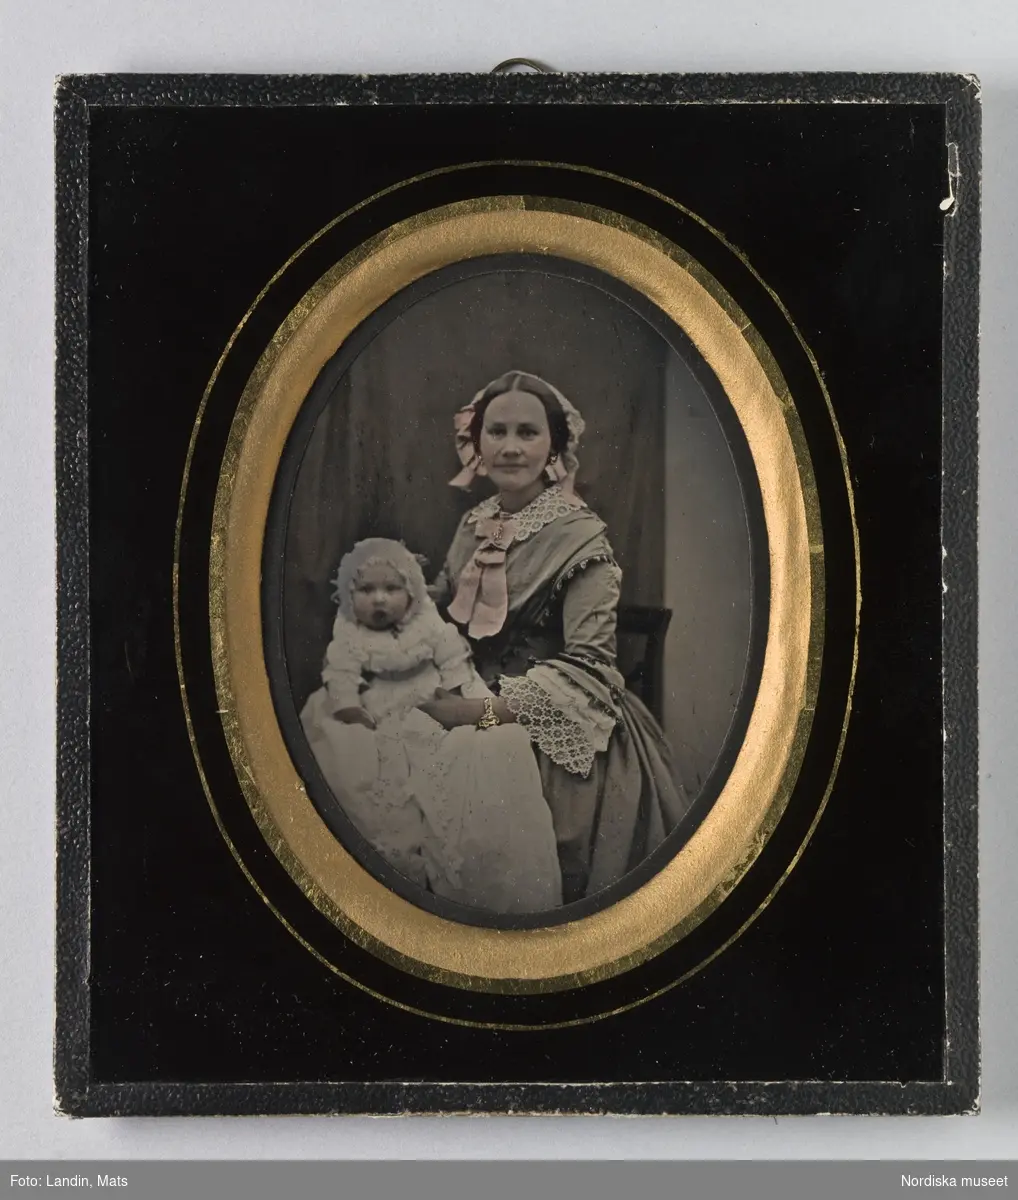 Dubbelporträtt av kvinna och barn. Ambrotypi, handkolorerad.  Nordiska museet inv.nr 111257.